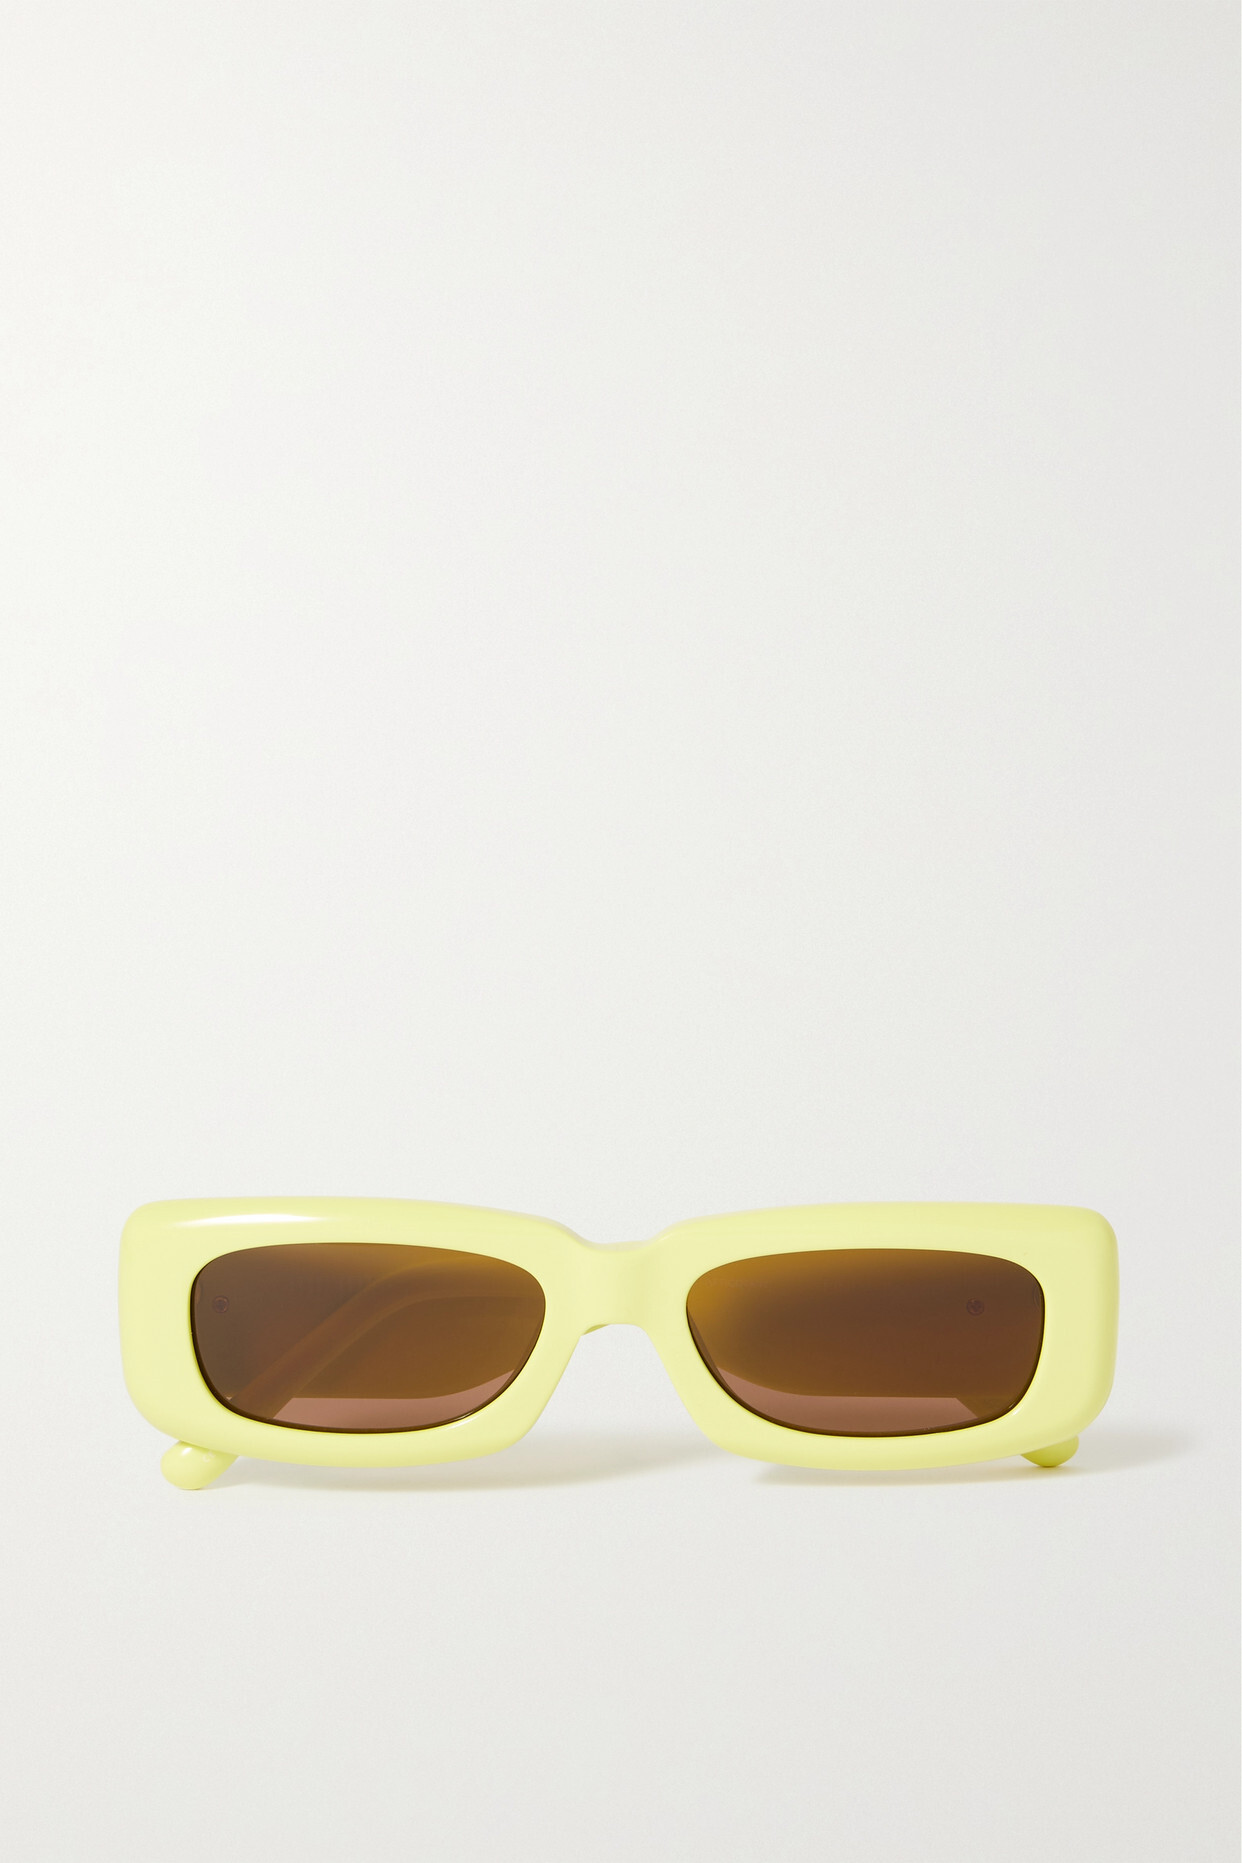 The Attico - + Linda Farrow Mini Marfa Rectangular-frame Acetate Sunglasses - Yellow